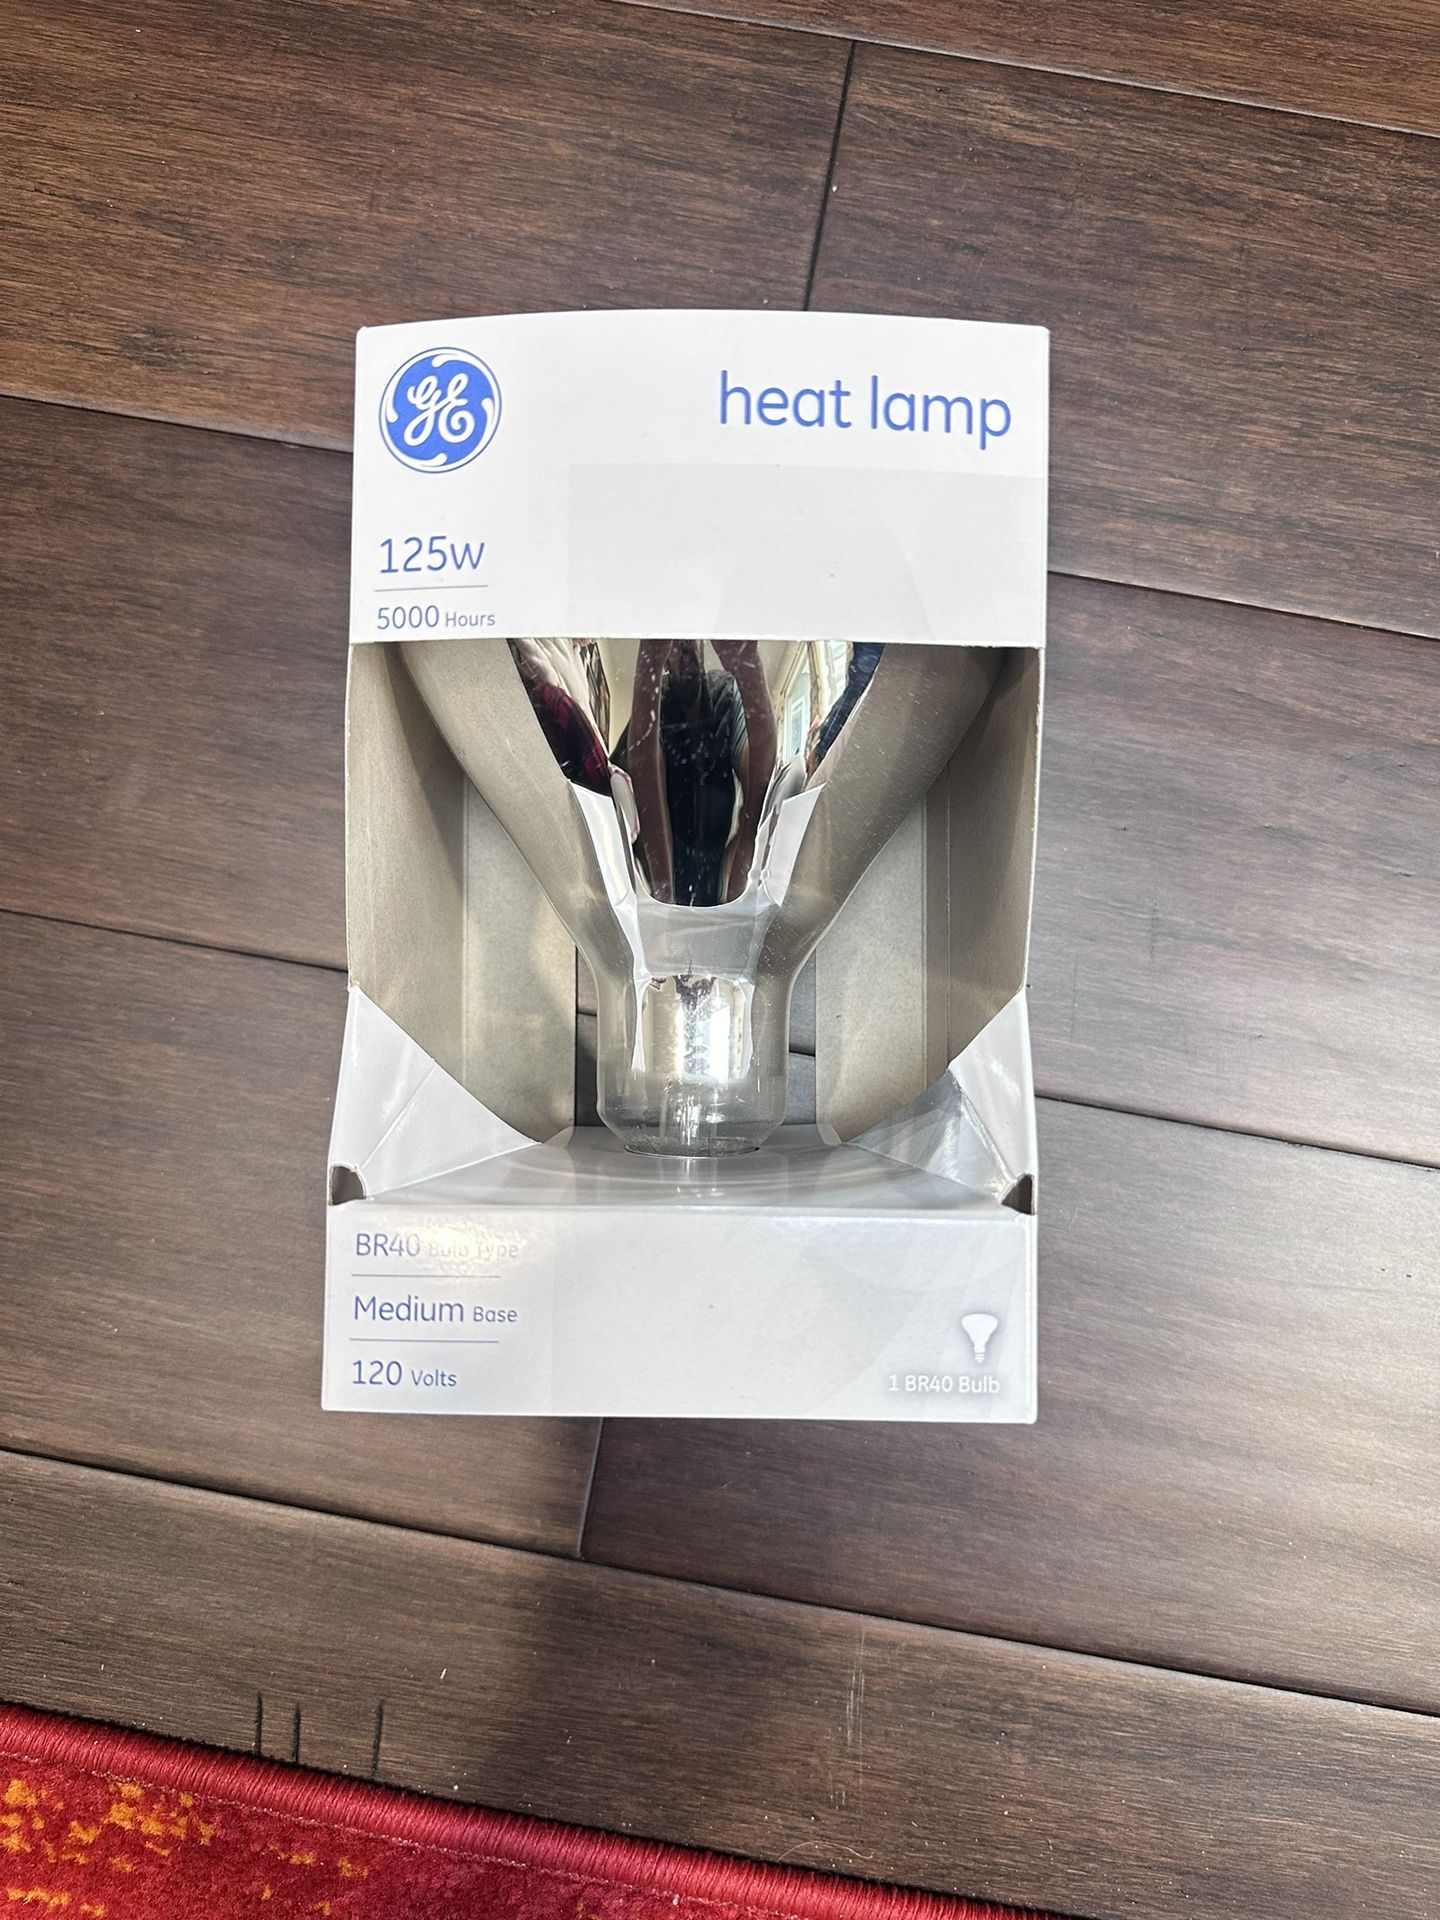 GE Heat Lamp 125w